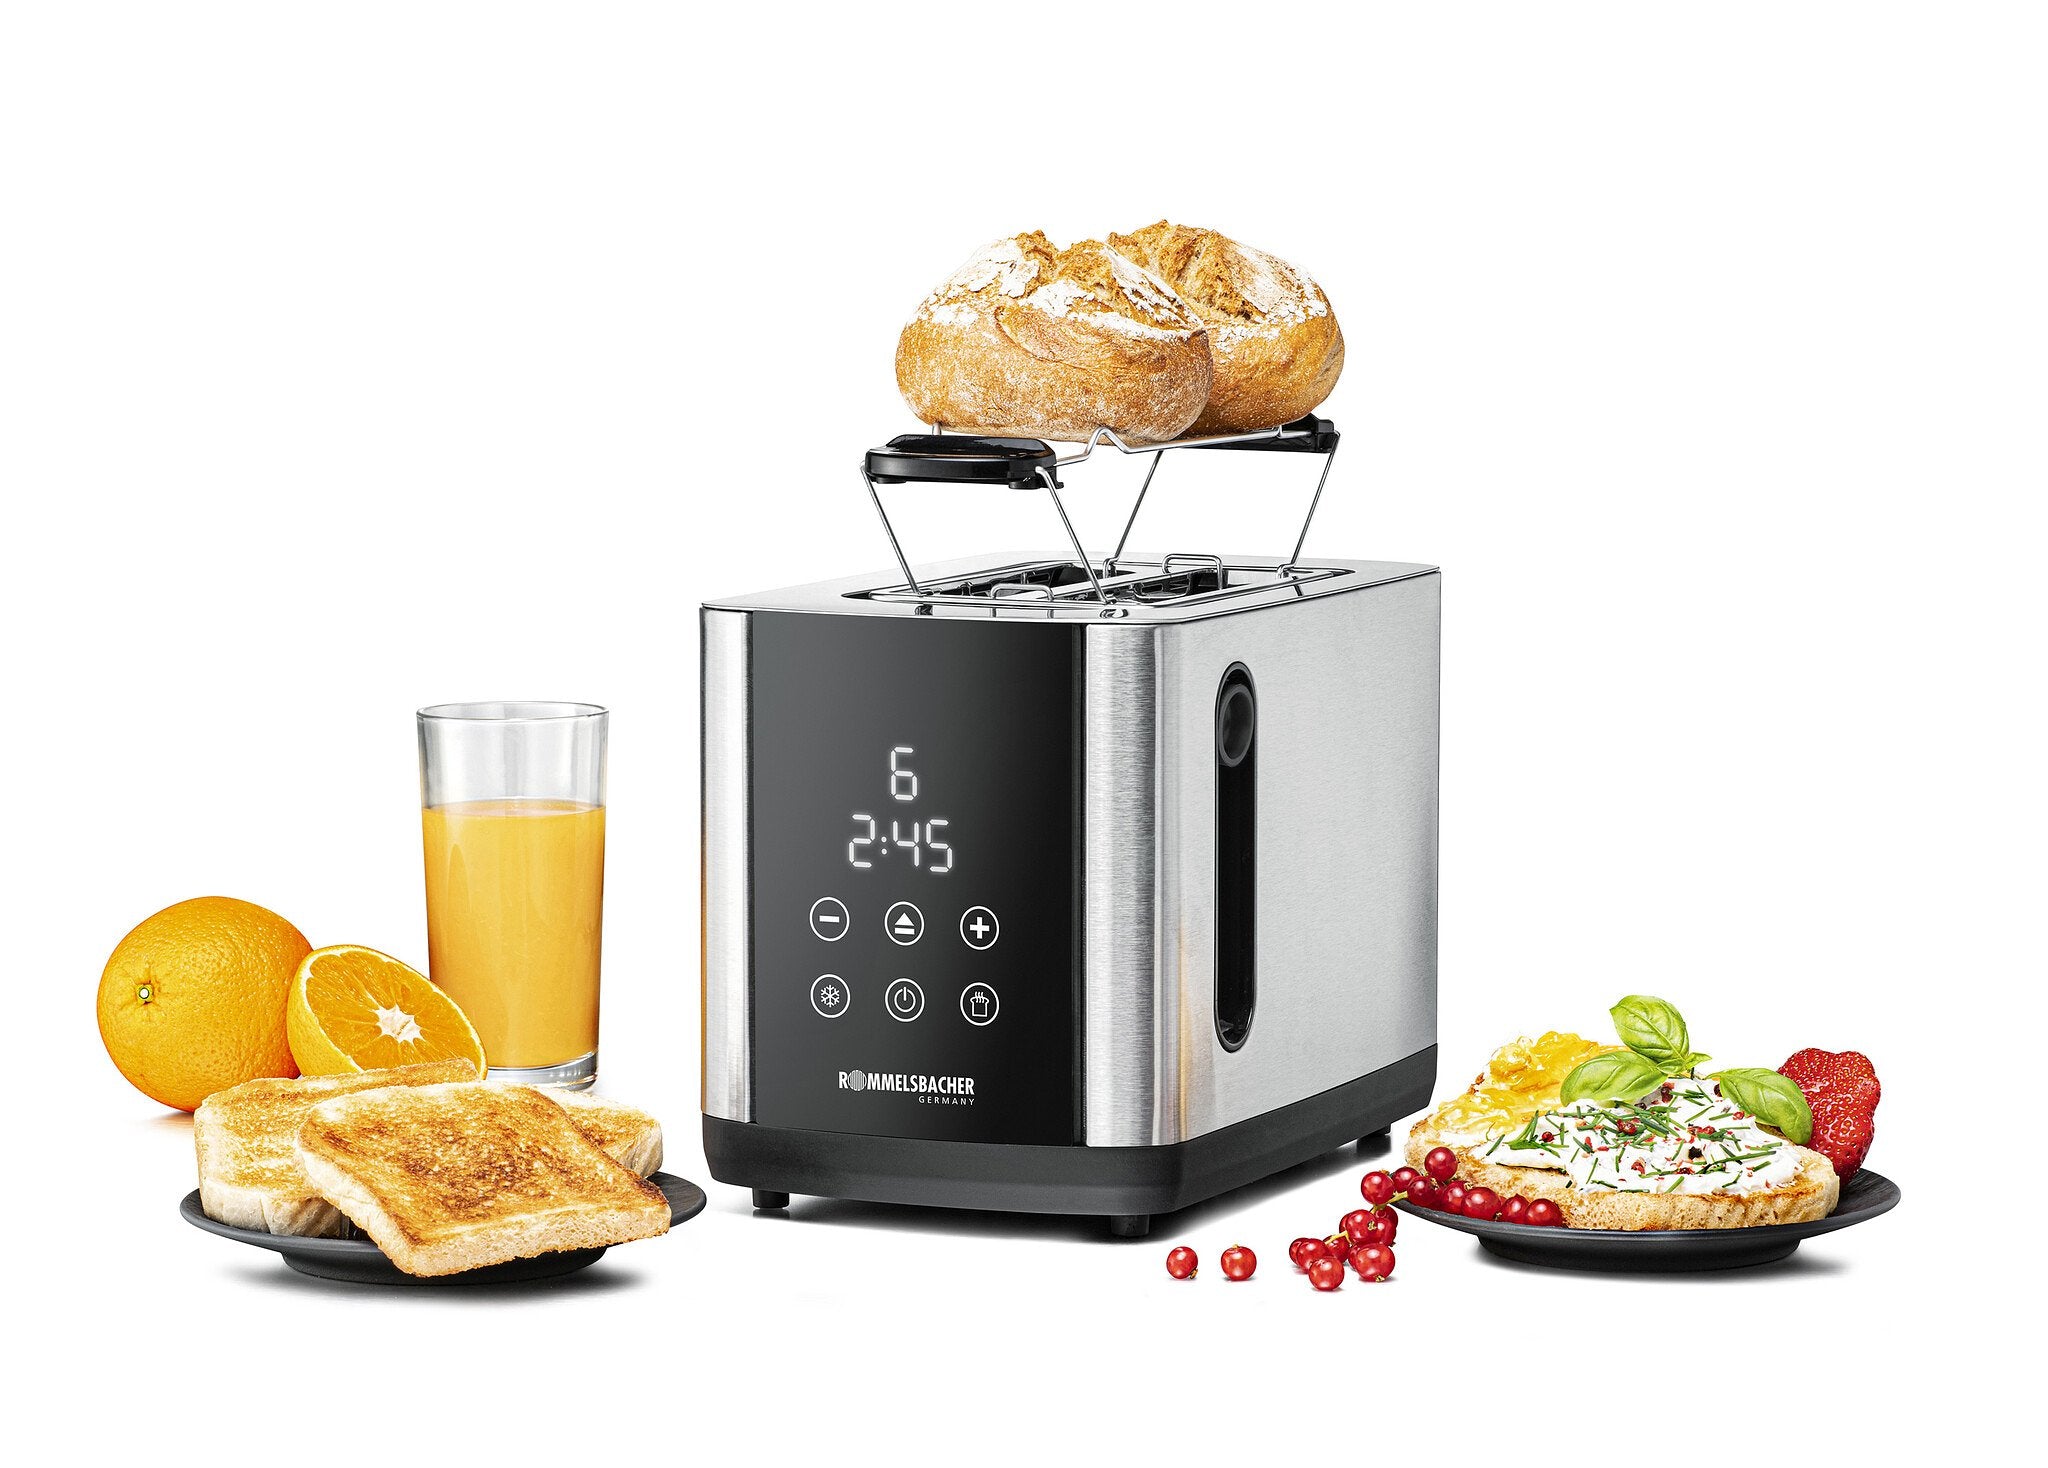 Rommelsbacher toaster Digital